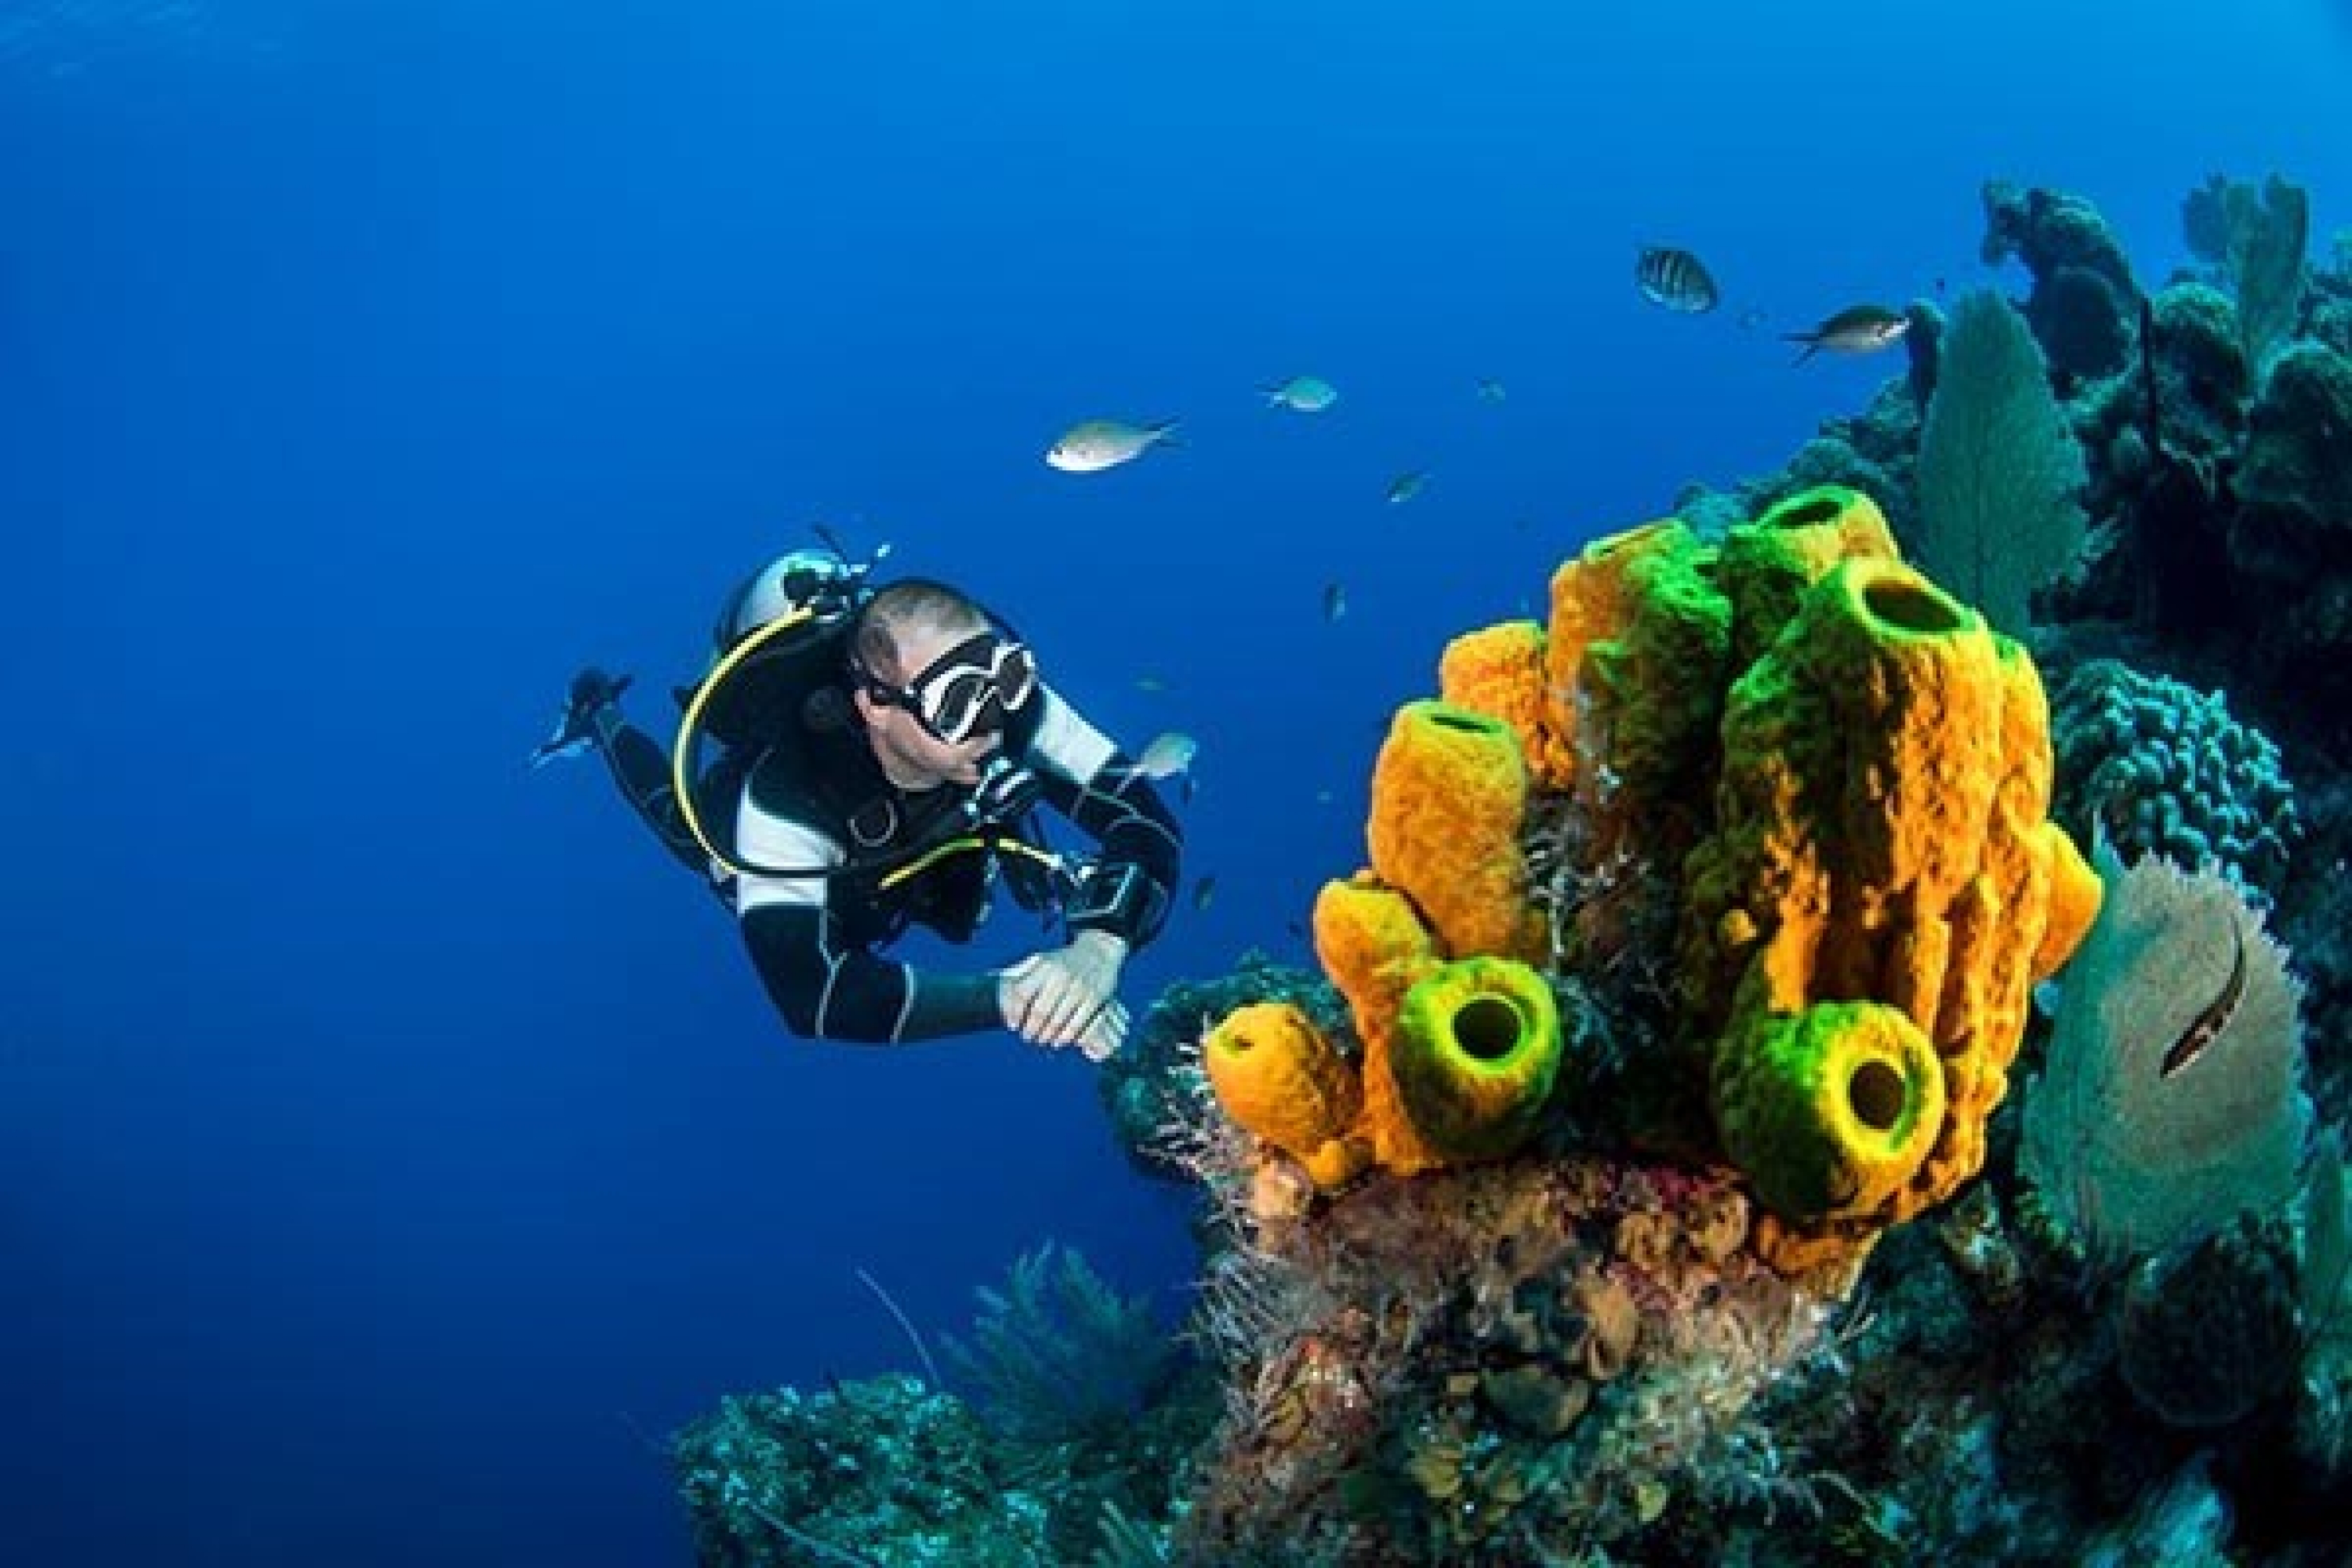 Un plongeur admire un récif corallien. À partir de quand considère-t-on qu’il s’agit d’une entreprise téméraire?